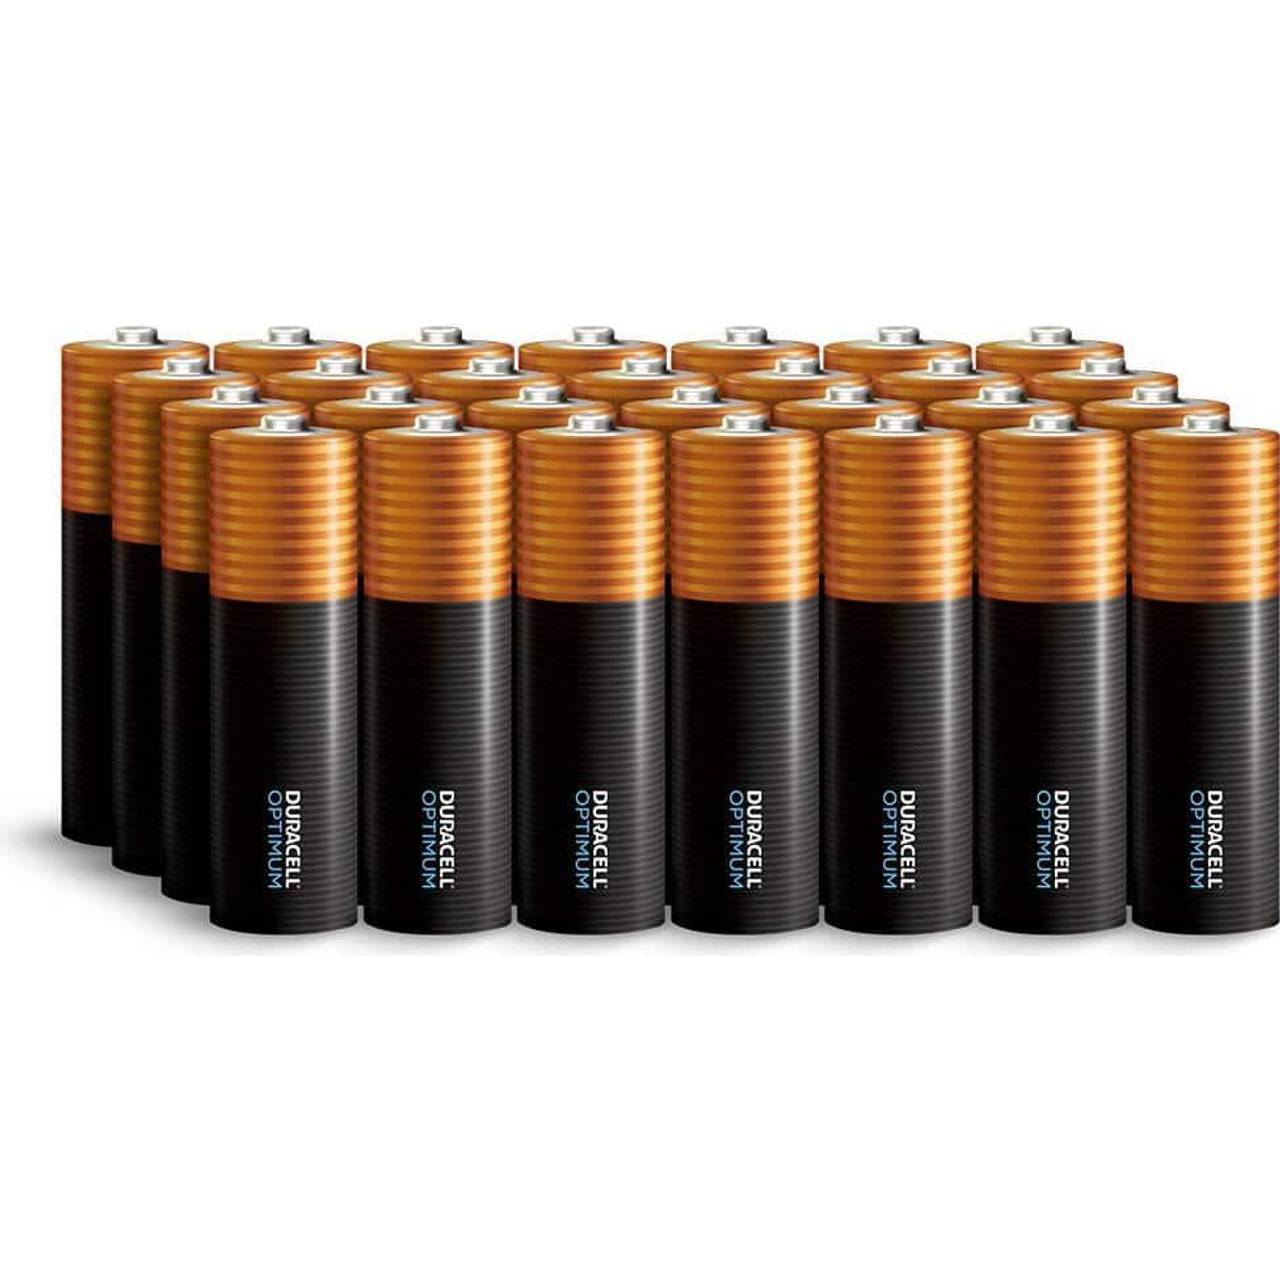 all eneloop batteries